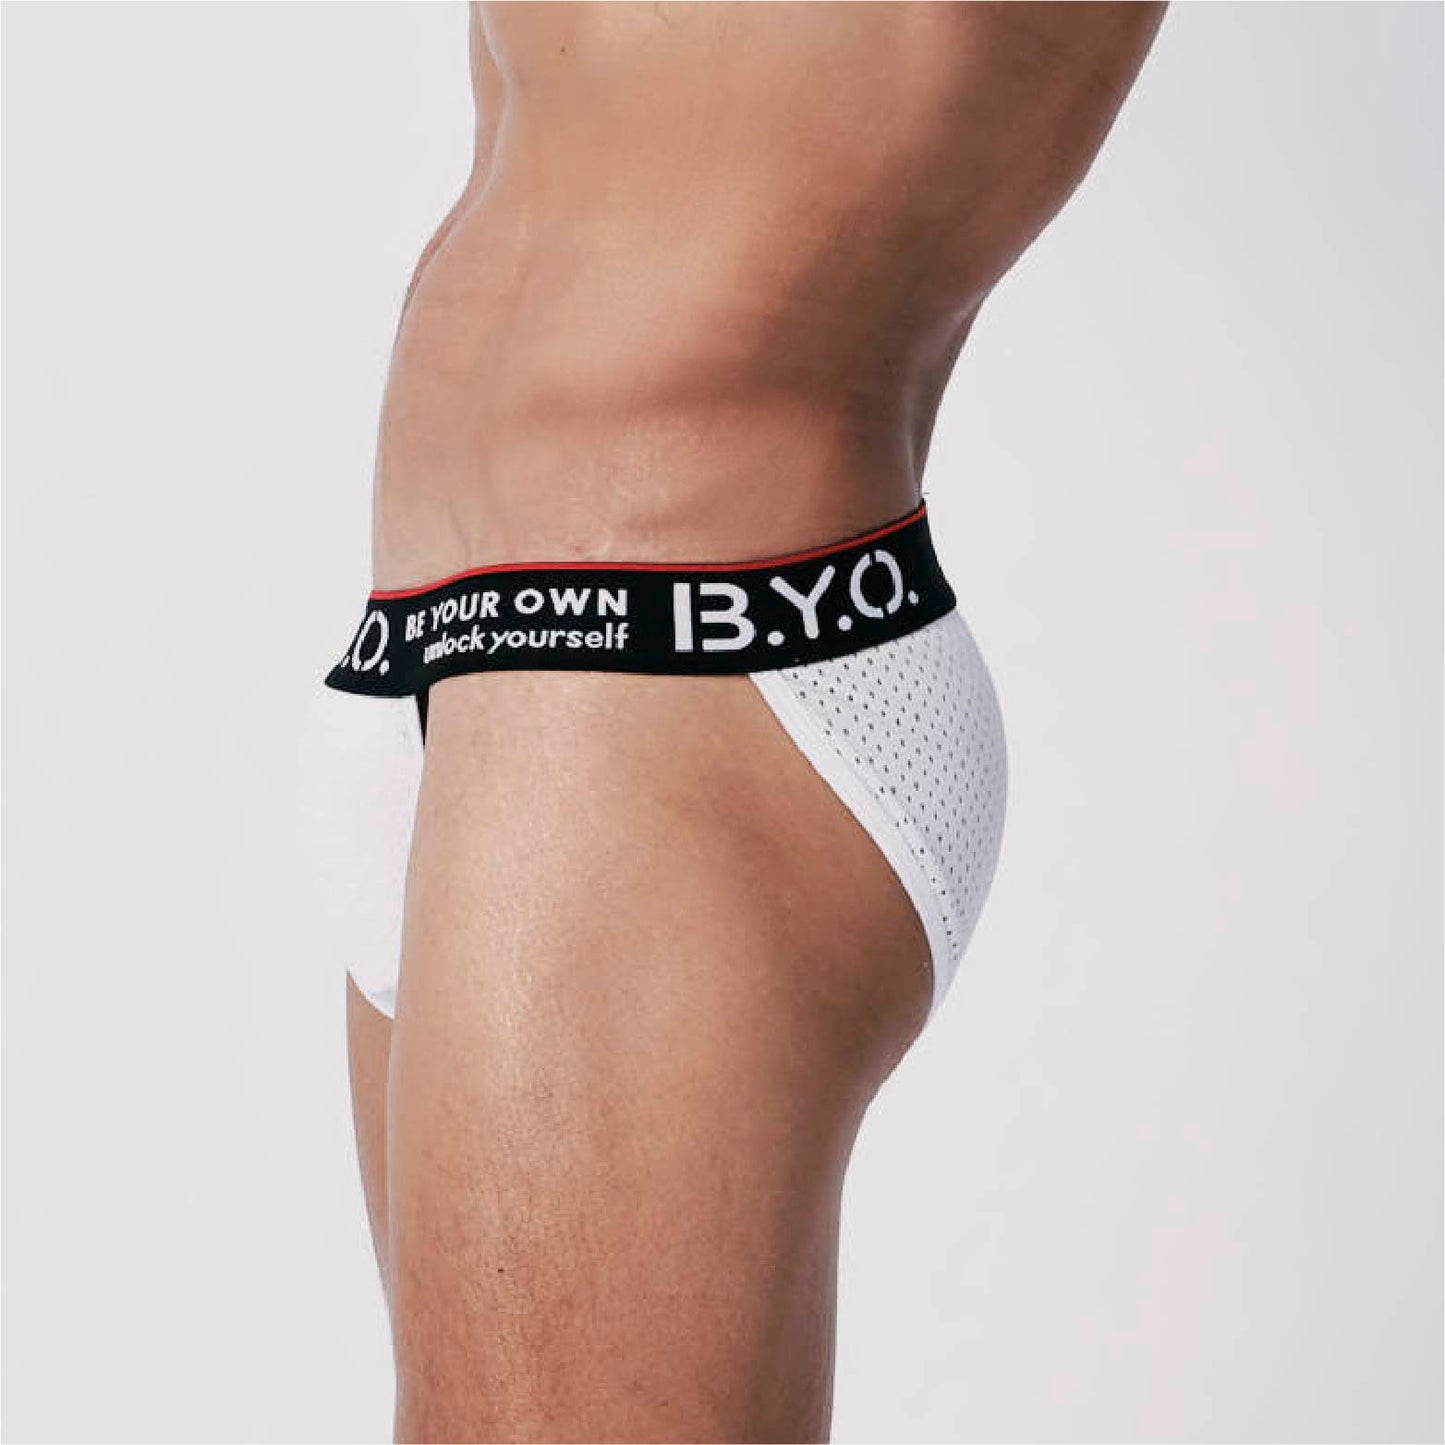 B.Y.O.BeYourOwn-กางเกงชั้นในร่องสูง-ตาข่ายสีขาว